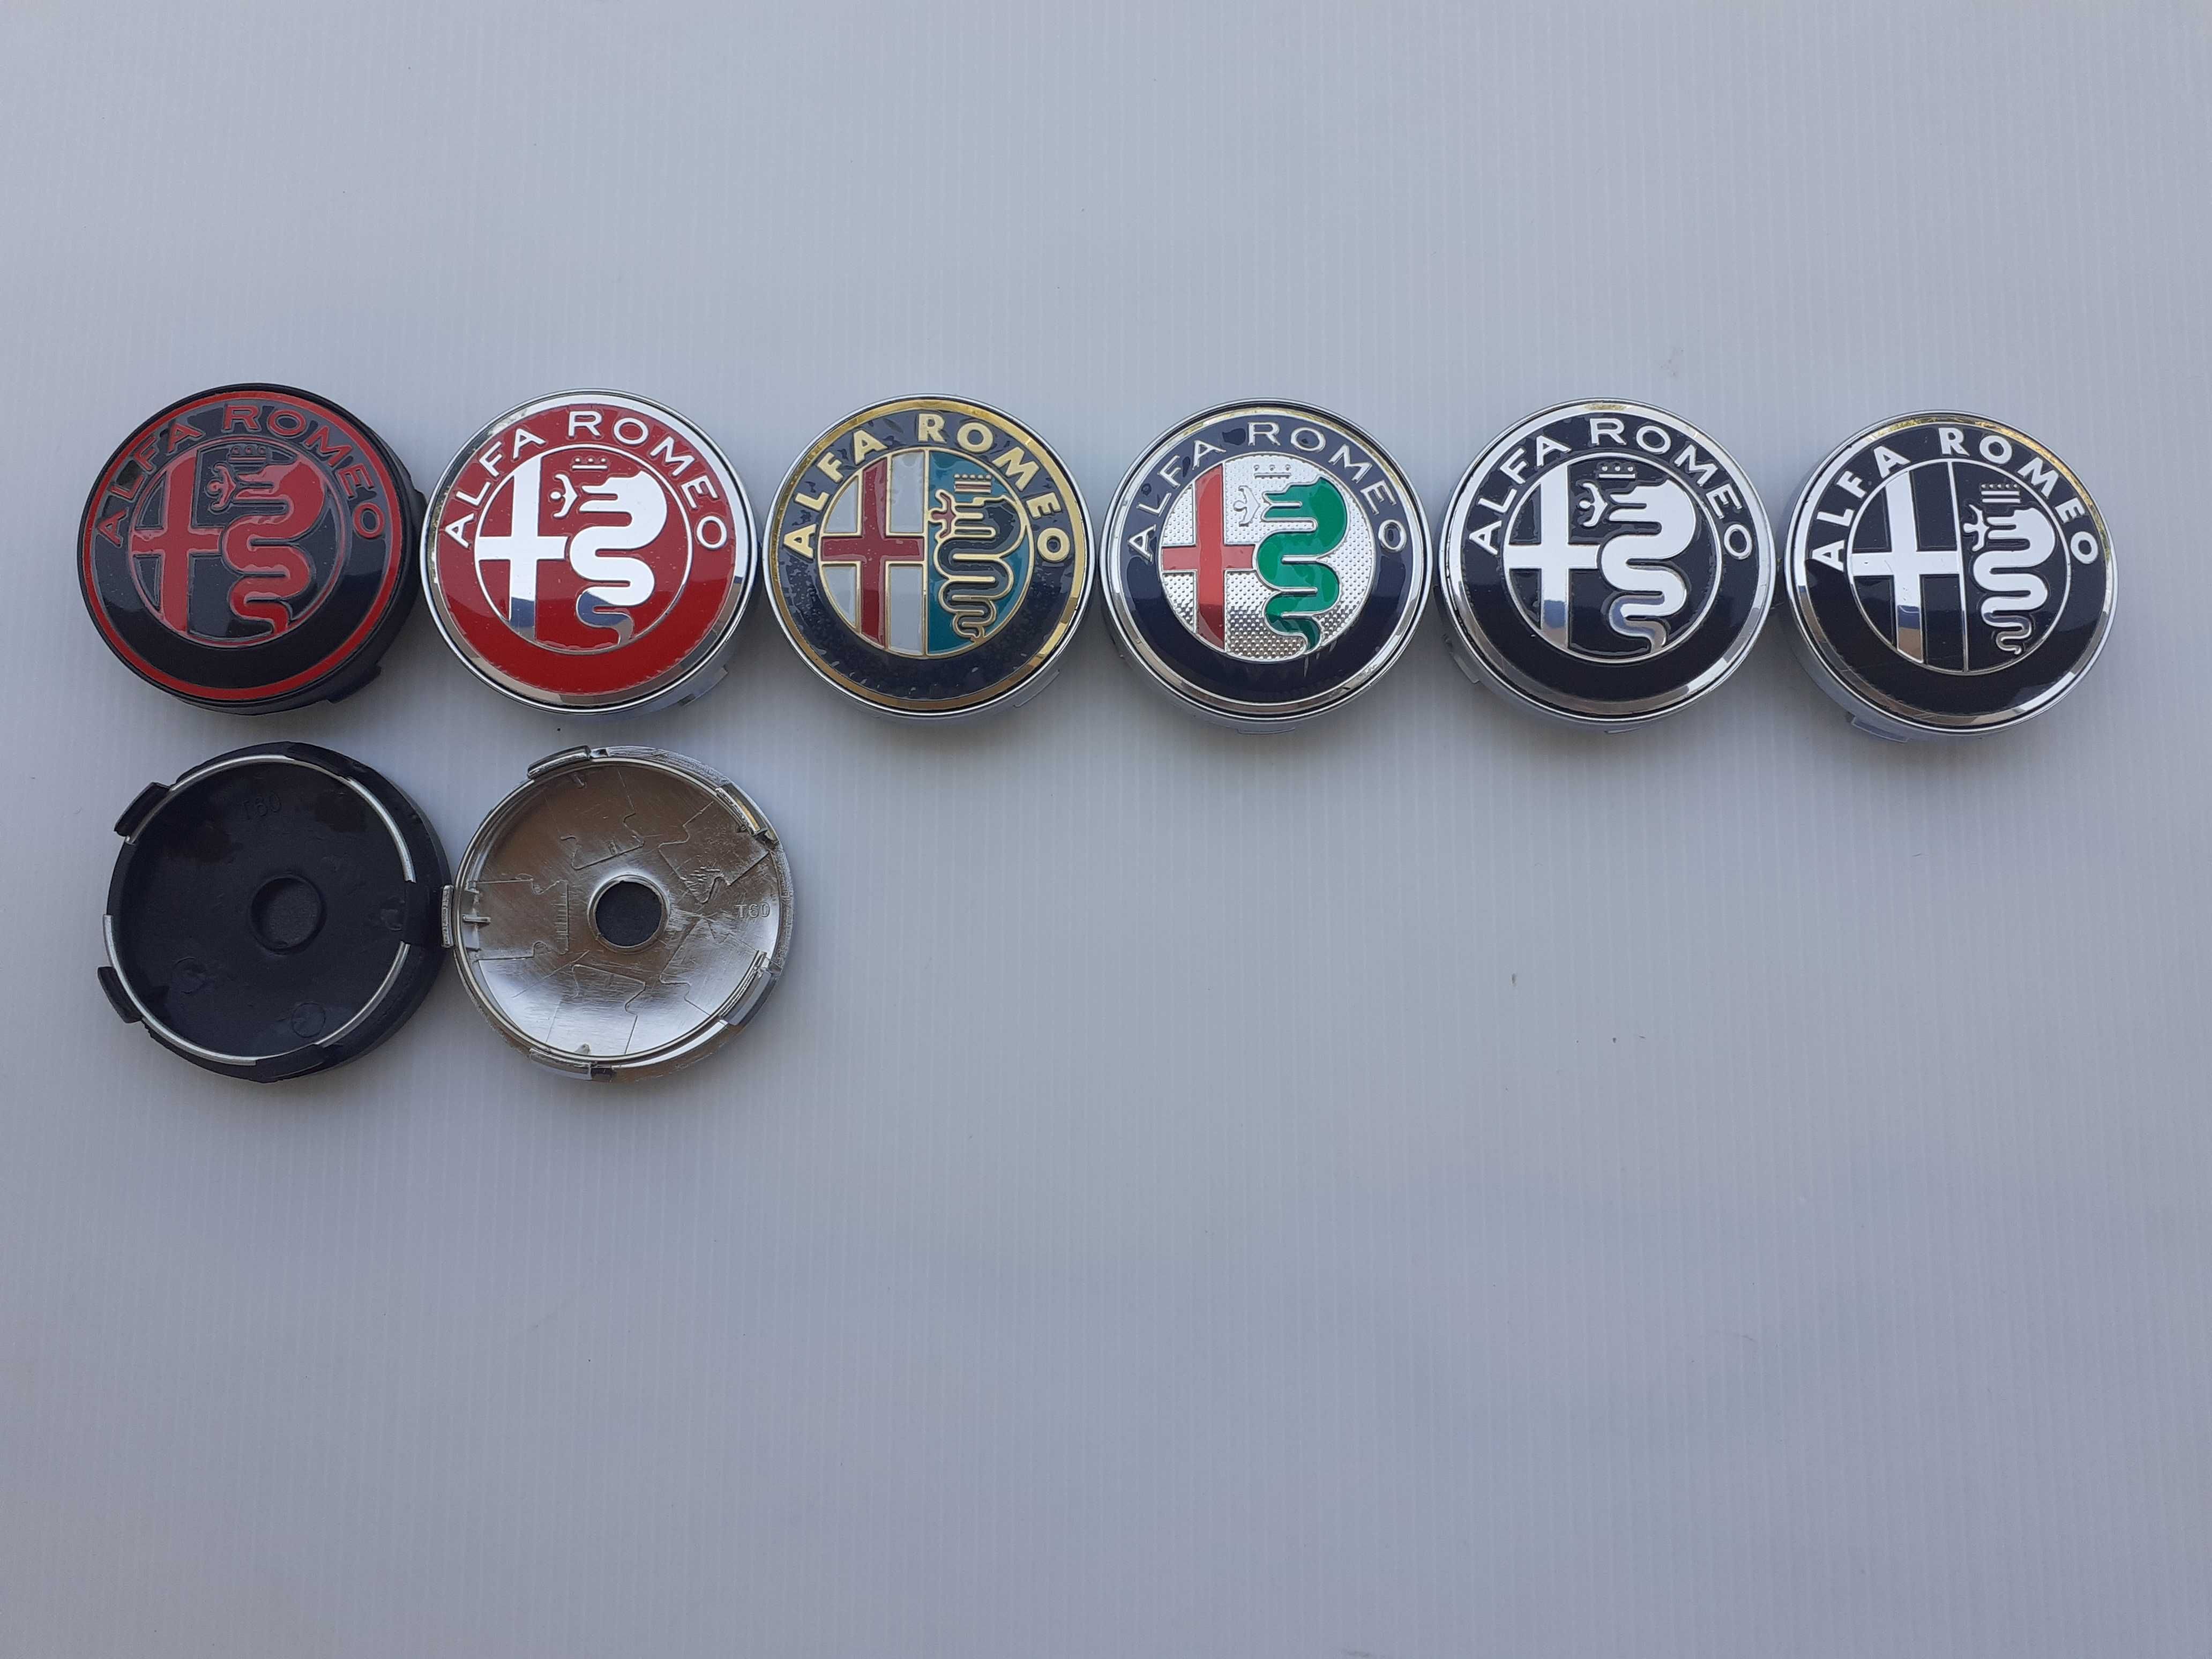 Centros/tampas de jante completos Alfa Romeo com 50, 56, 60 e 65 mm